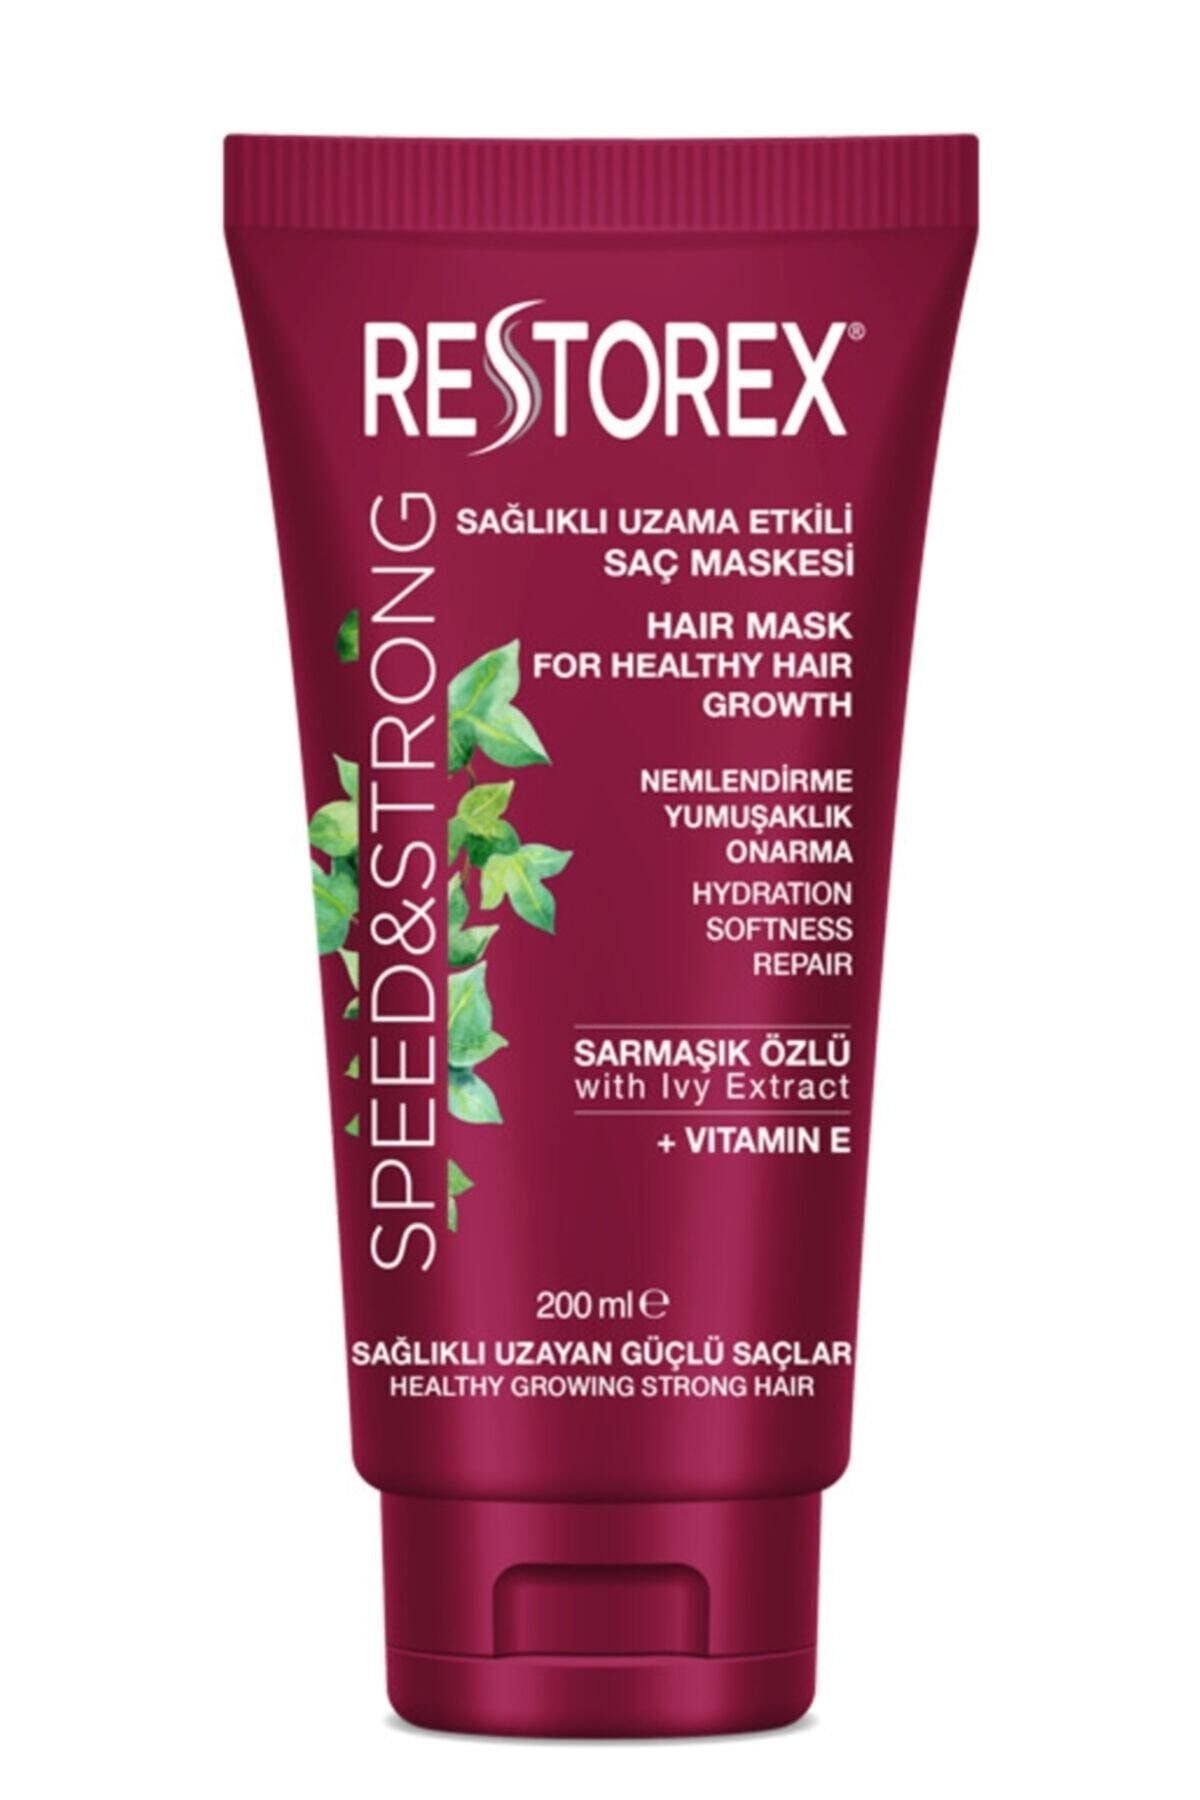 Restorex Sağlıklı Uzama Etkili Saç Maskesi